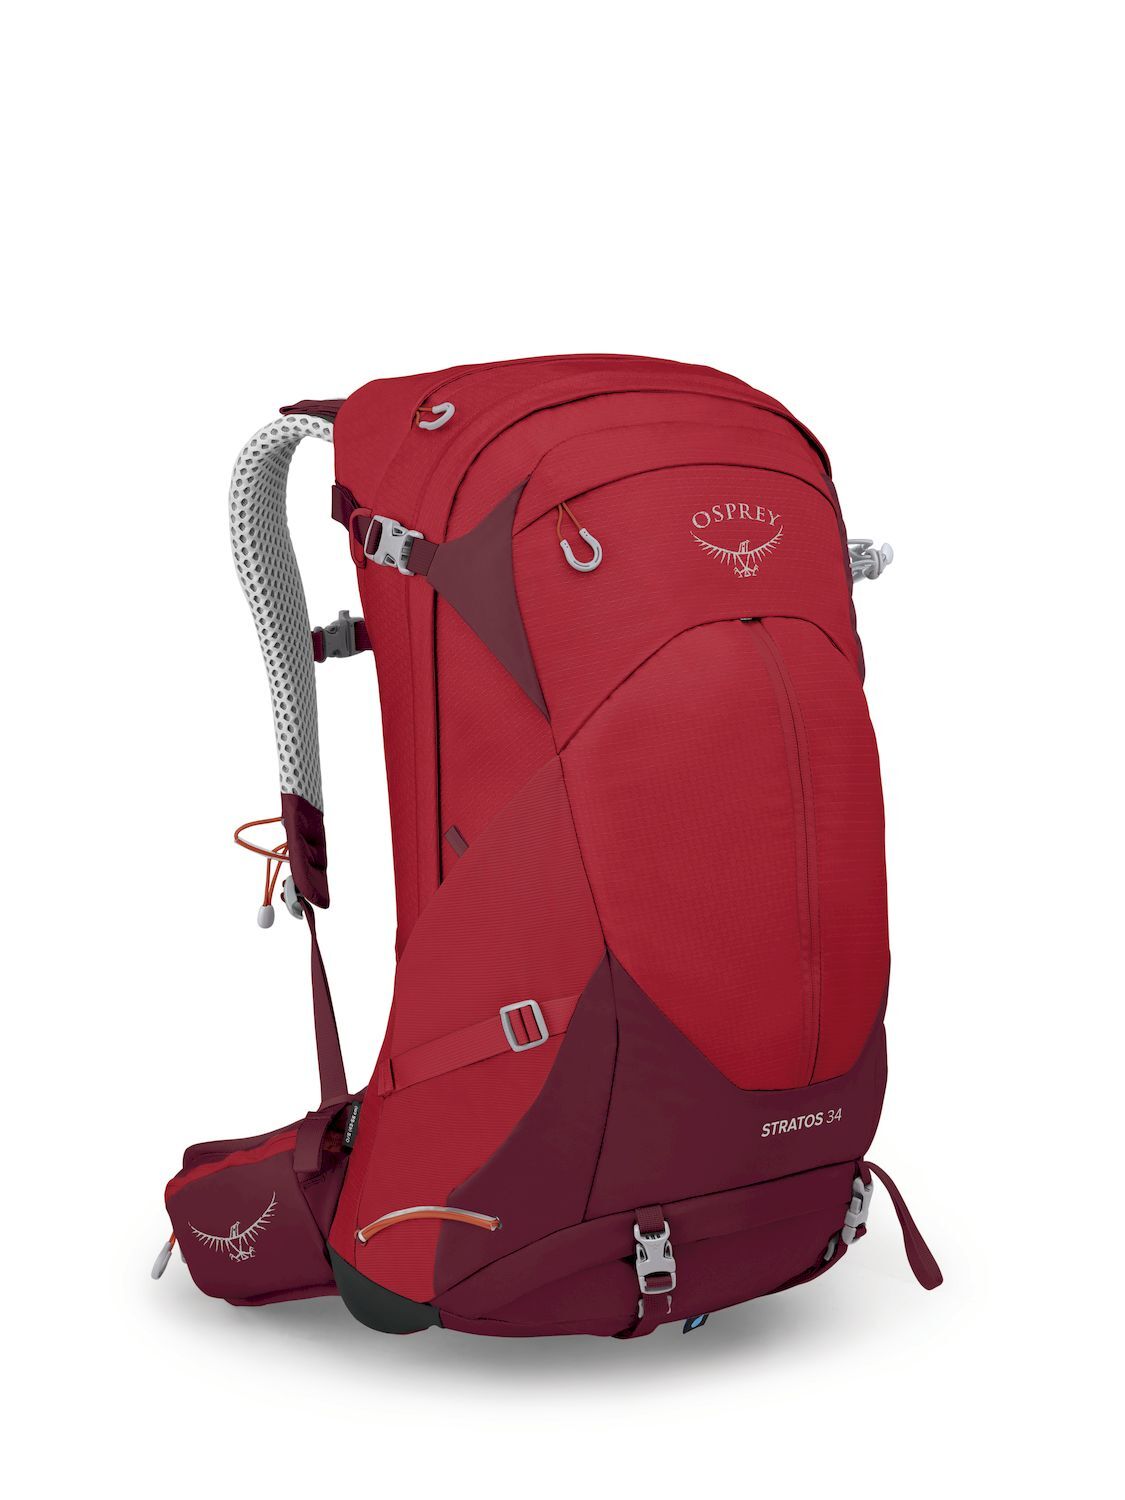 Osprey Talon 44 - Walking backpack - Men's